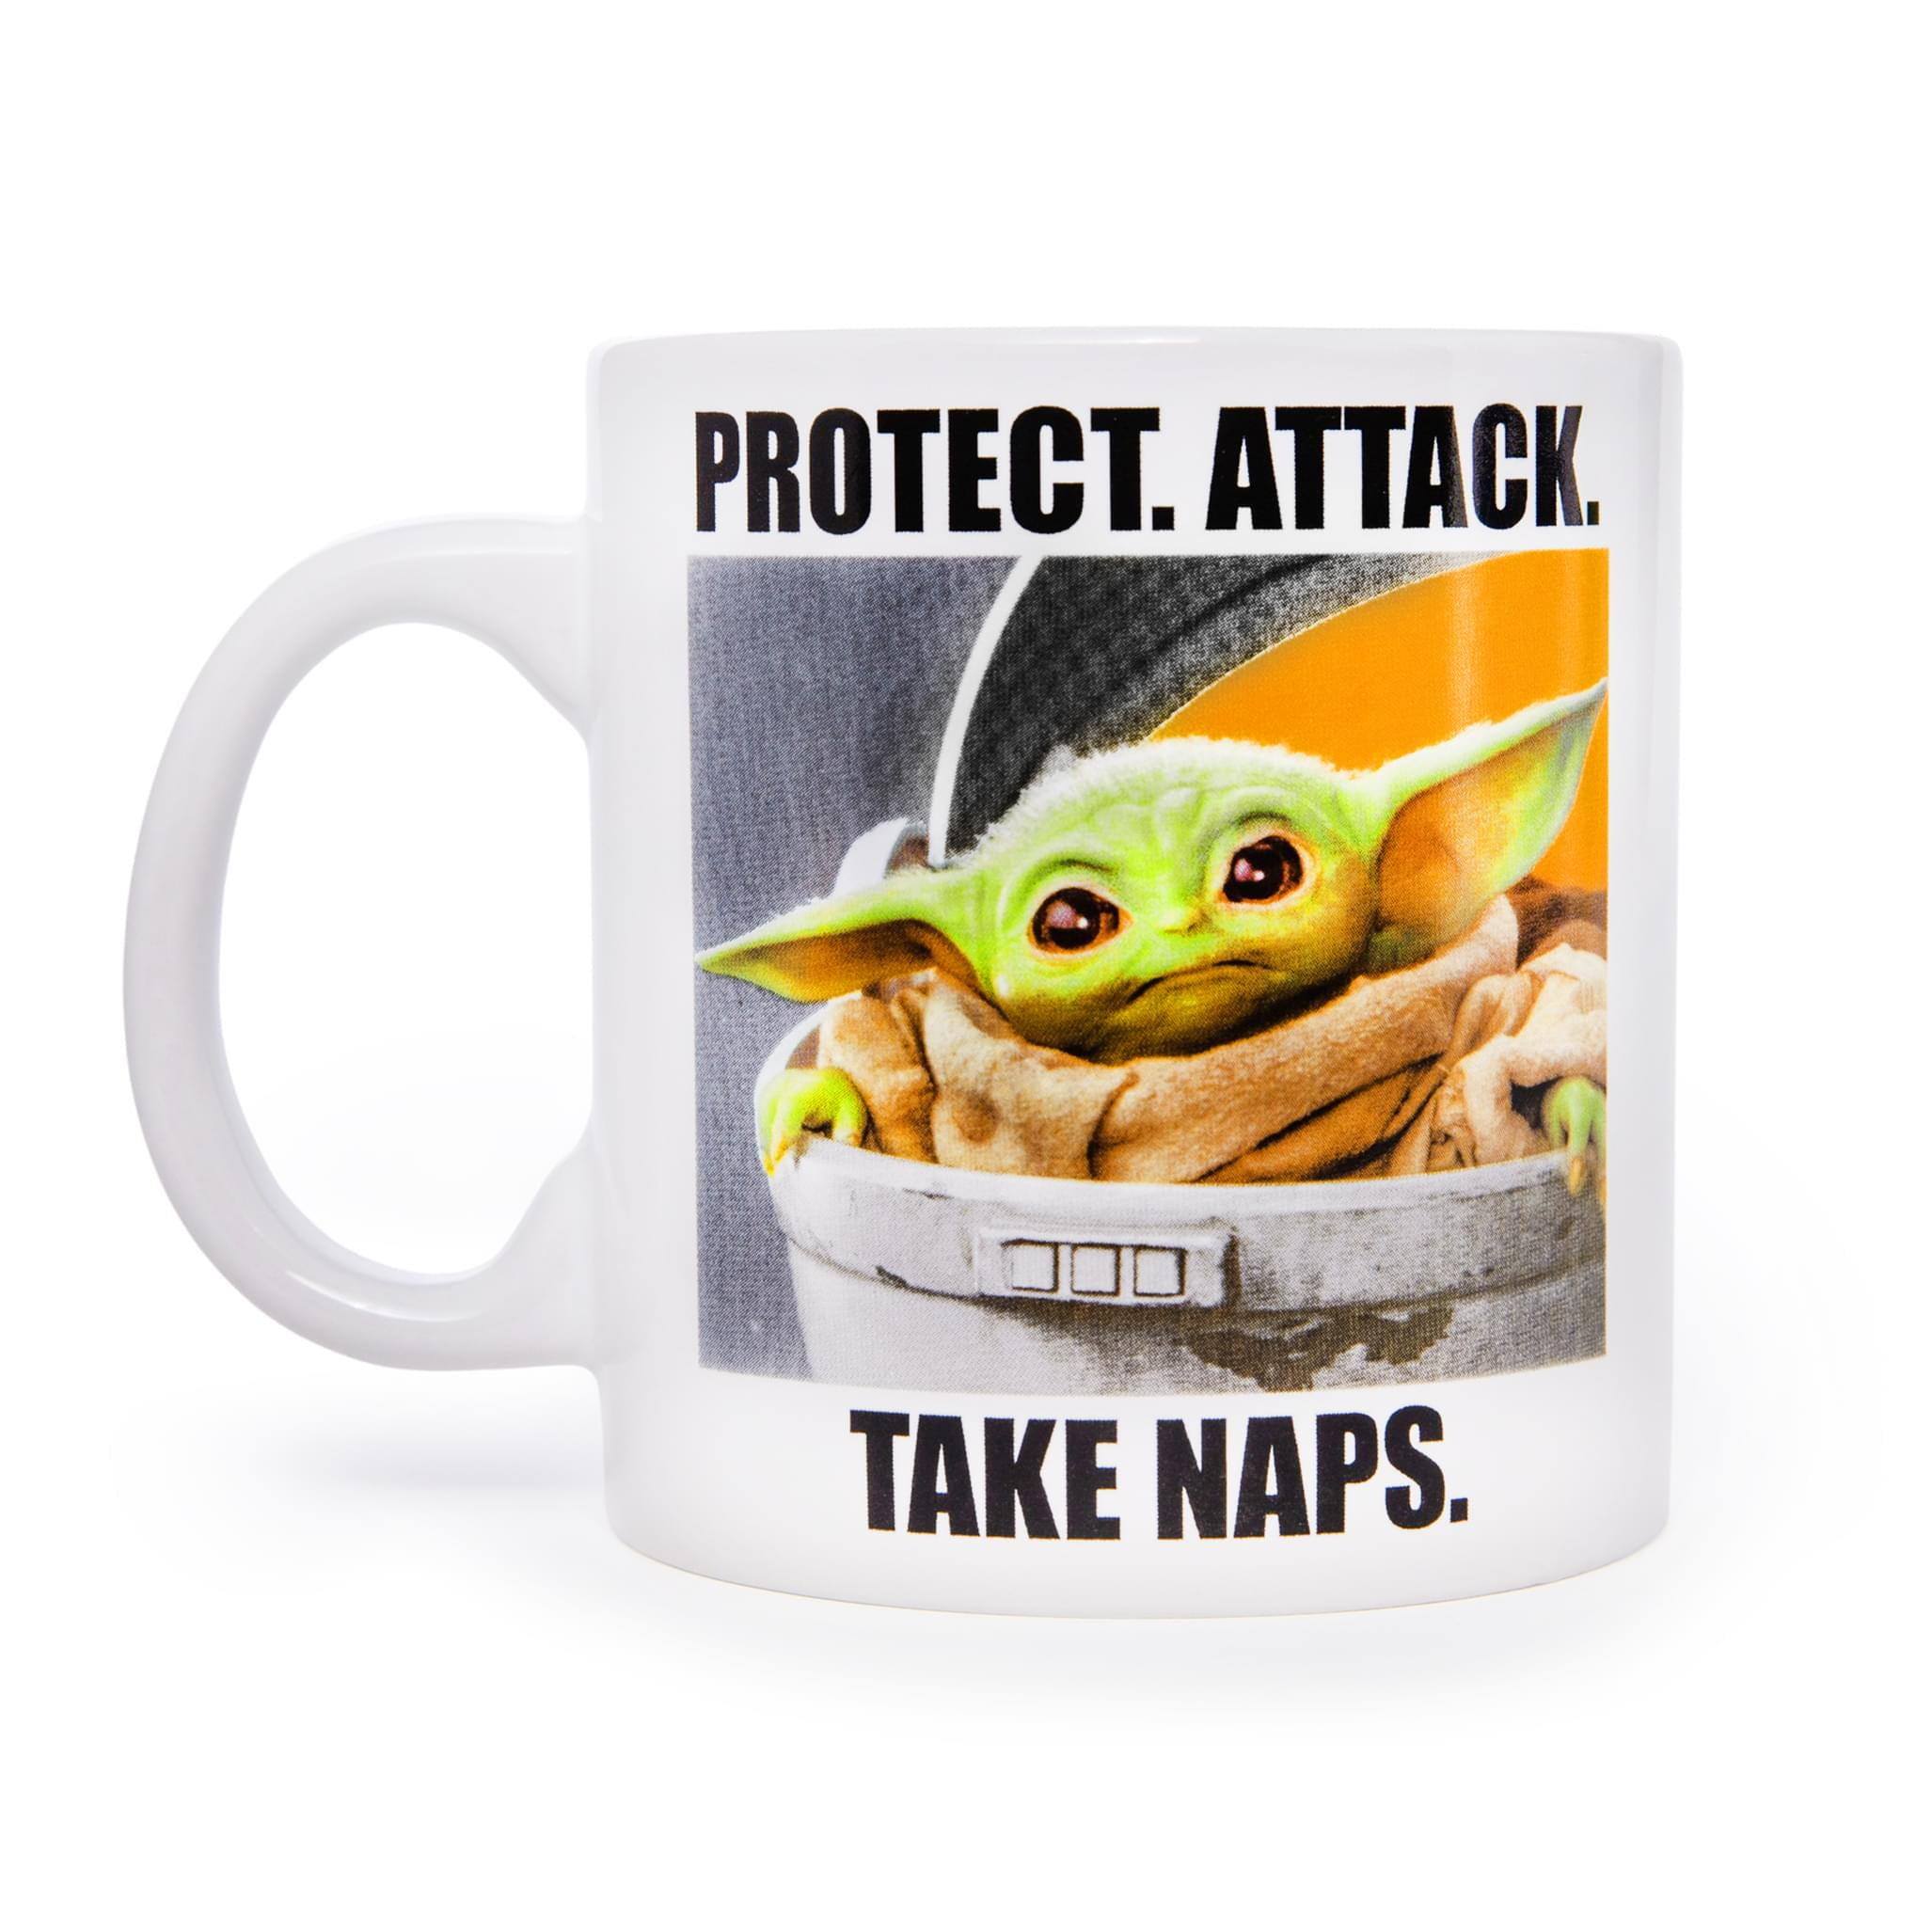 Star Wars Mandalorian Baby Yoda Protect Attack Mug LARGE 24oz NEW